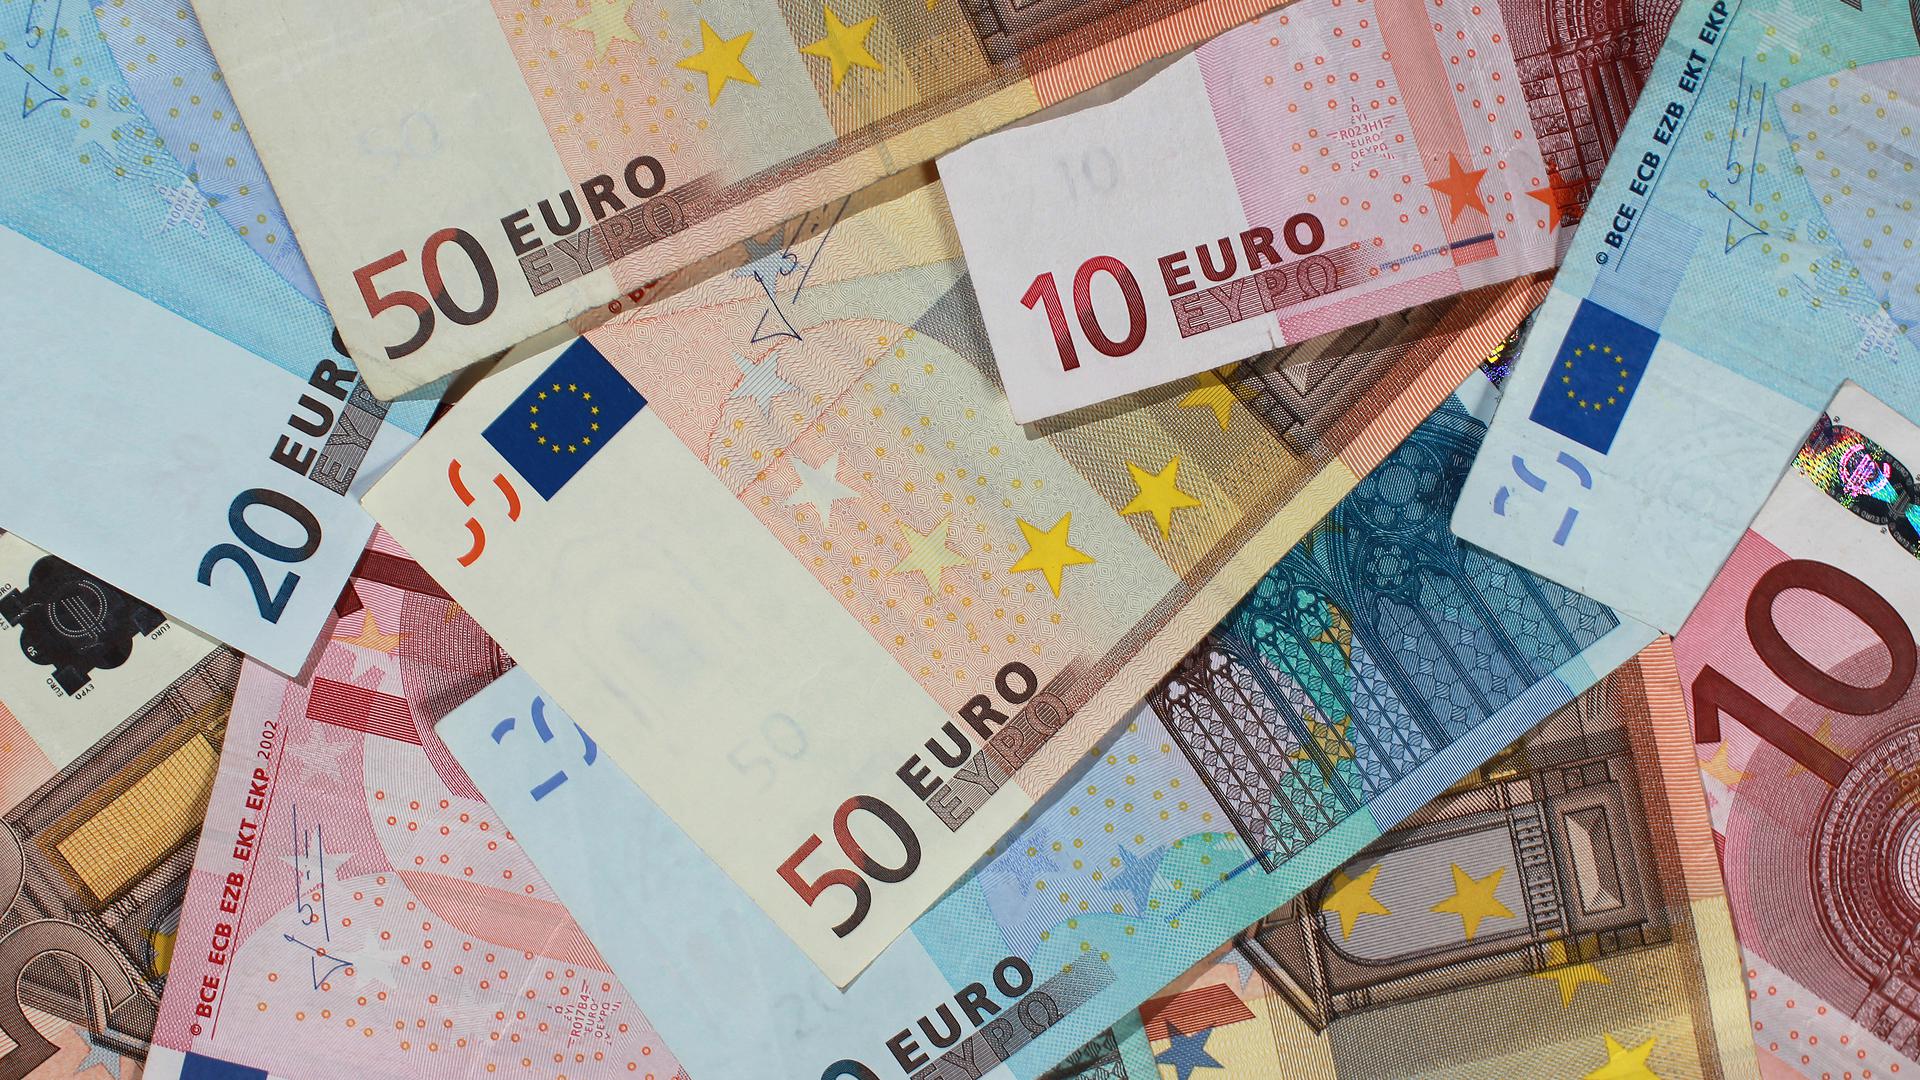 Haushalt Karlsruhe: Auf dem Bild liegen Banknoten von 50, 20 und 10 Euro auf einem Haufen. 